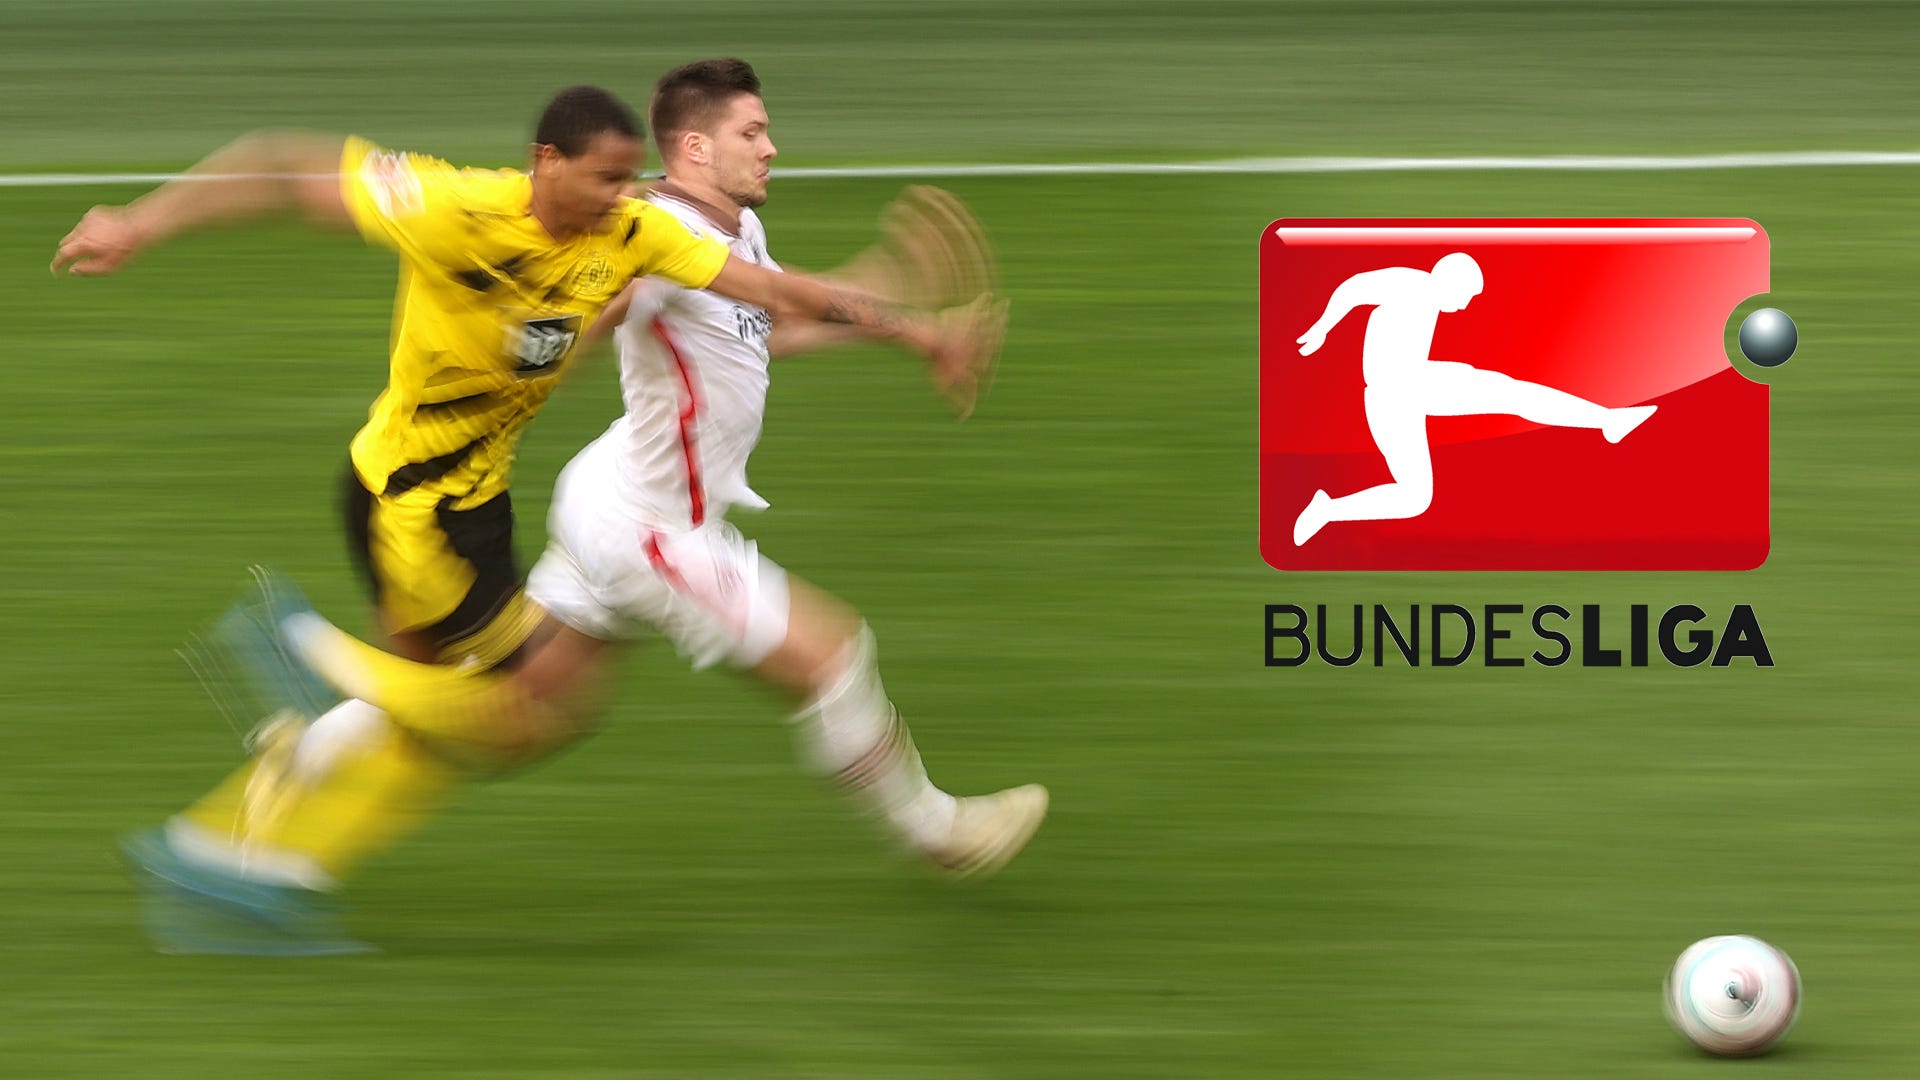 Bundesliga, Übertragung live im TV und LIVE-STREAM So werden die Spiele der Saison 2021/22 übertragen Goal Deutschland